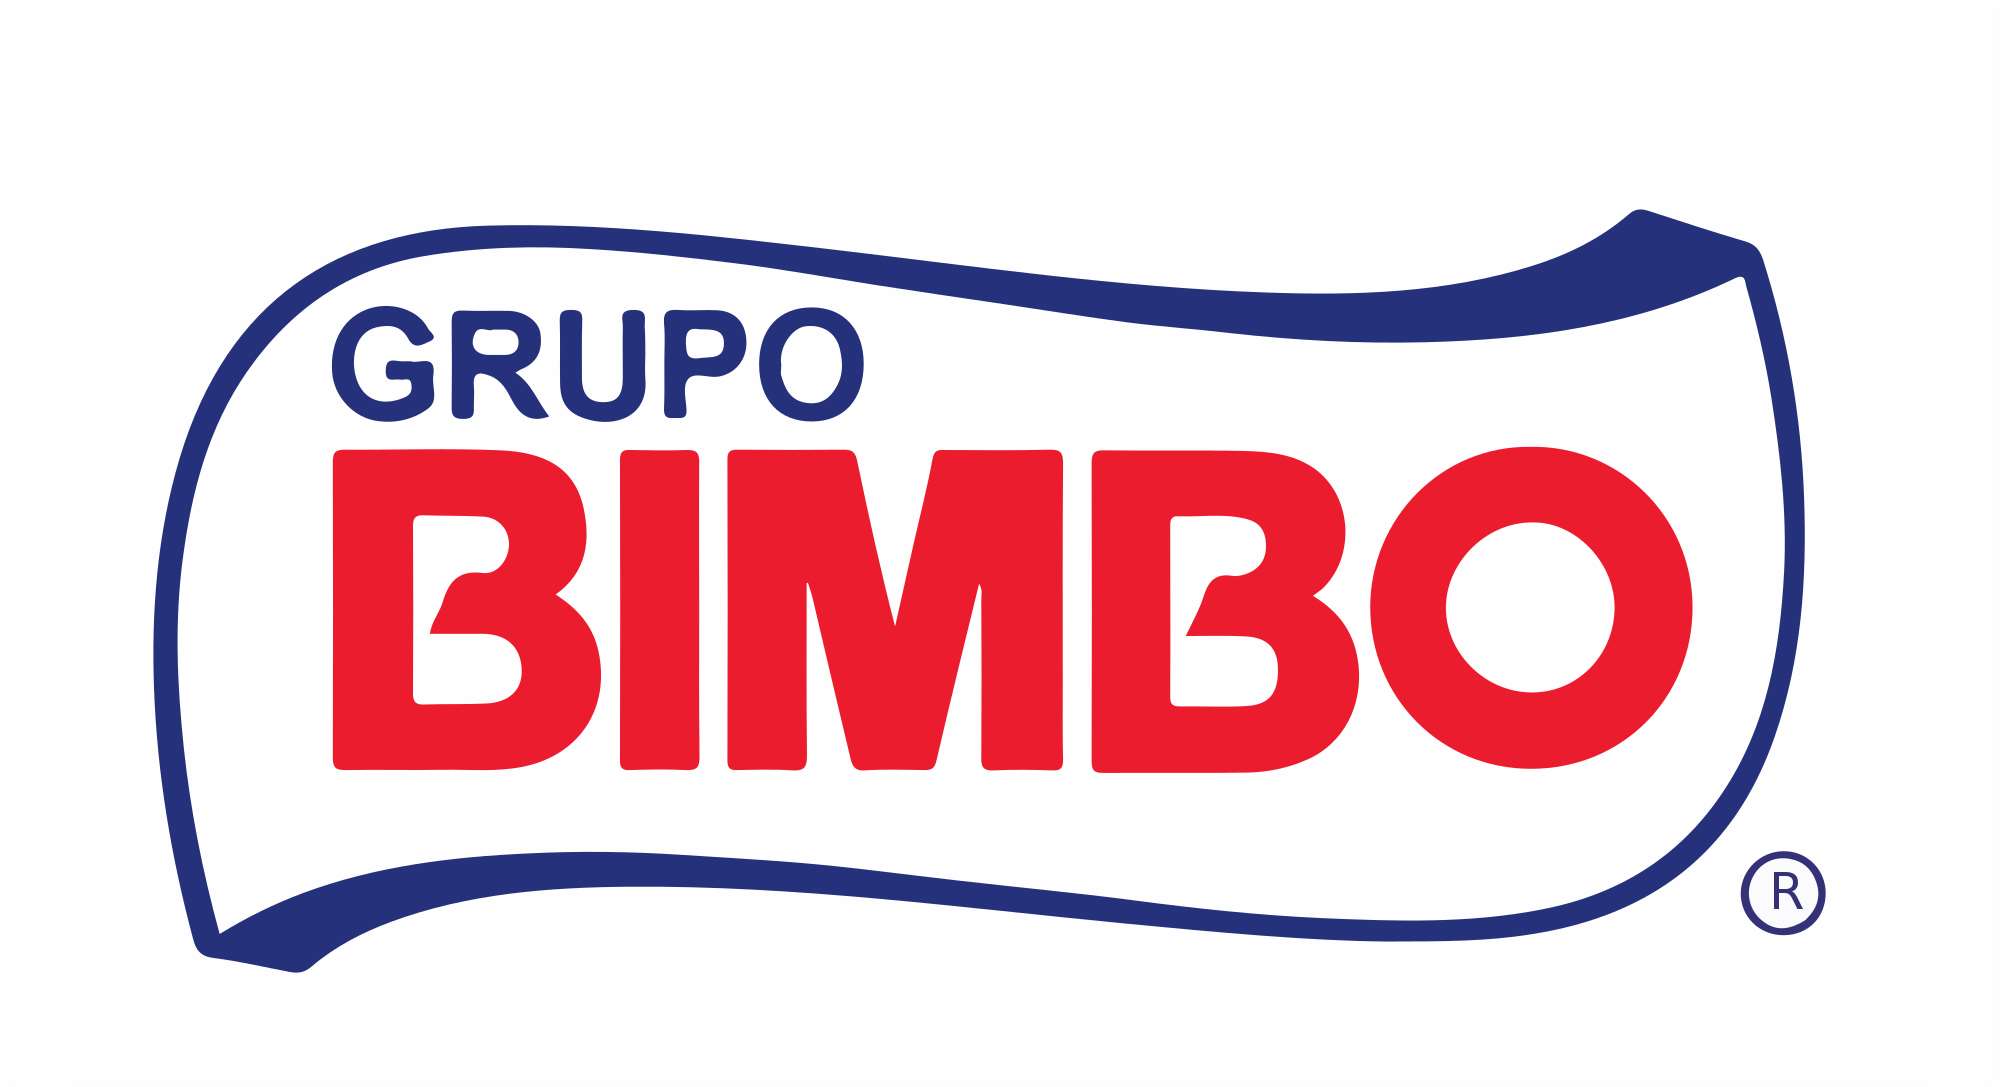 Groupo Bimbo